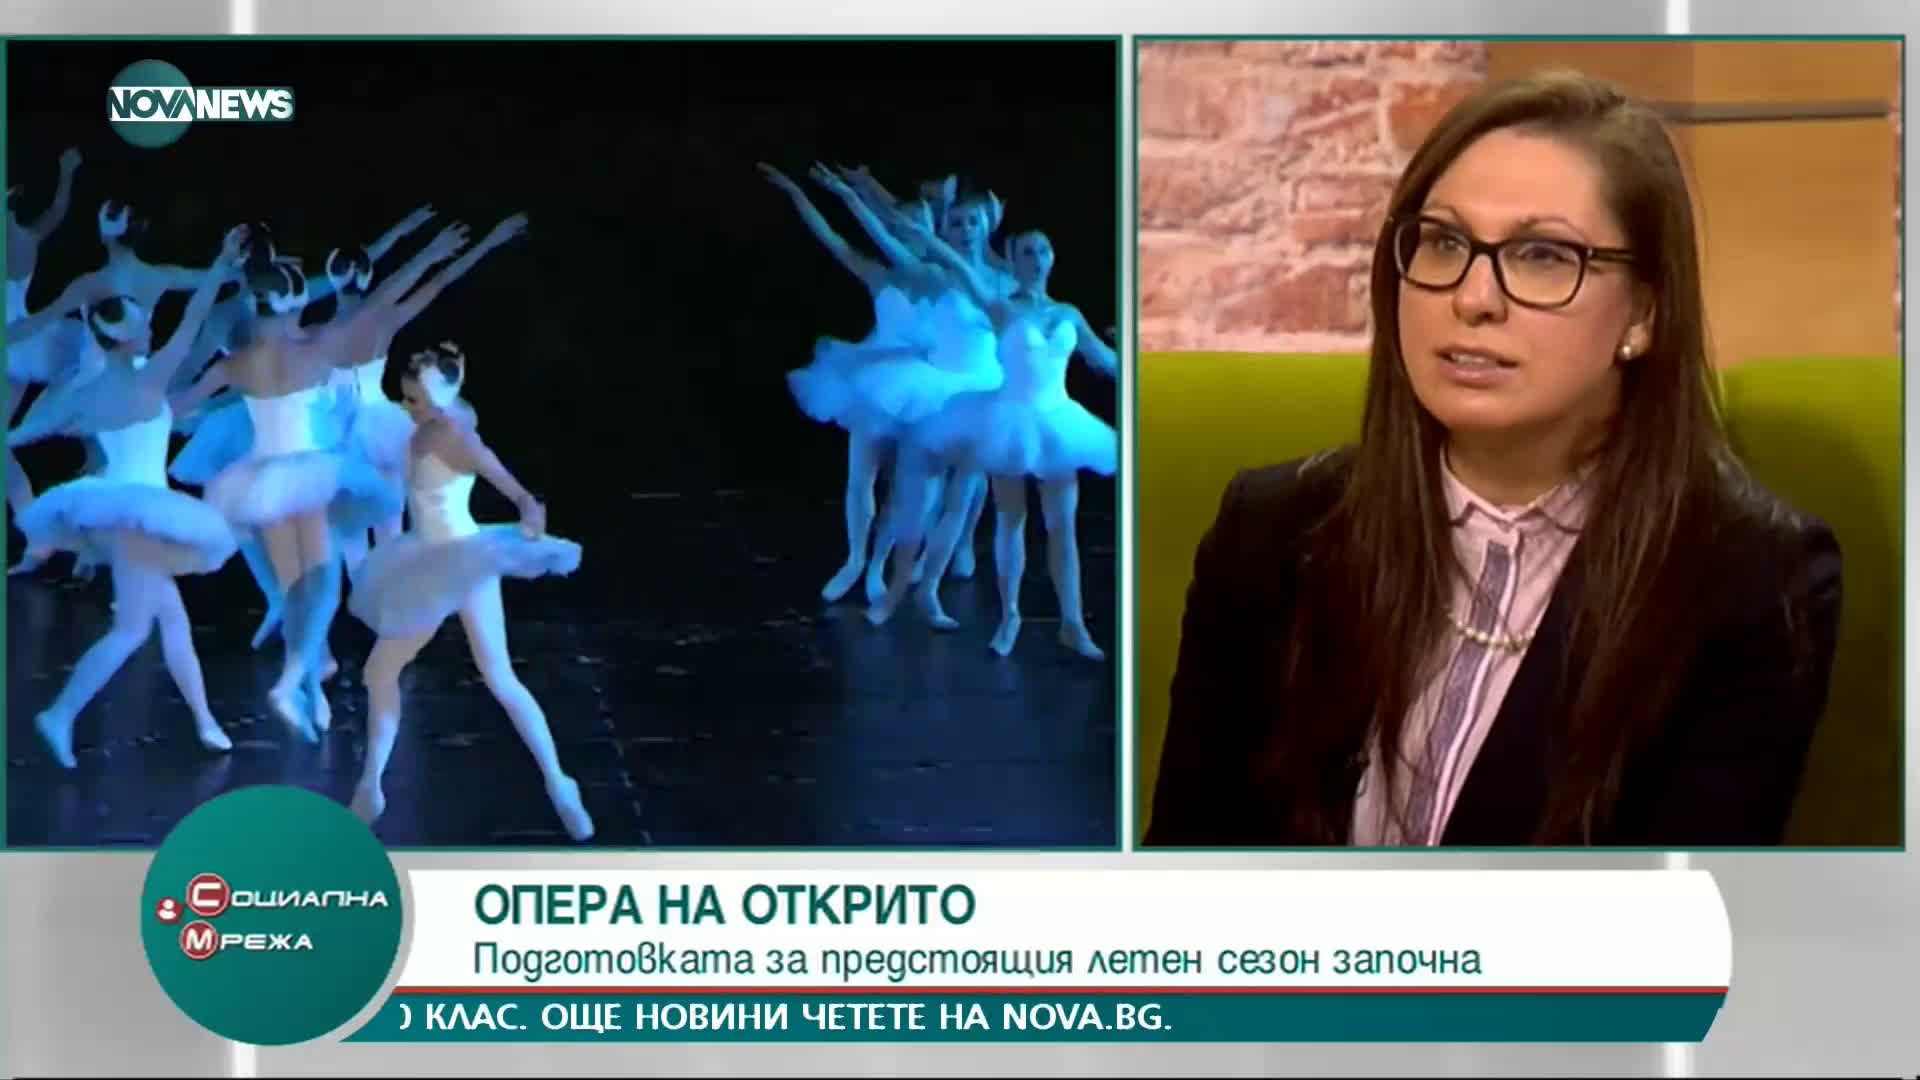 Христина Станева: През януари Софийската опера се превърна в детска приказка